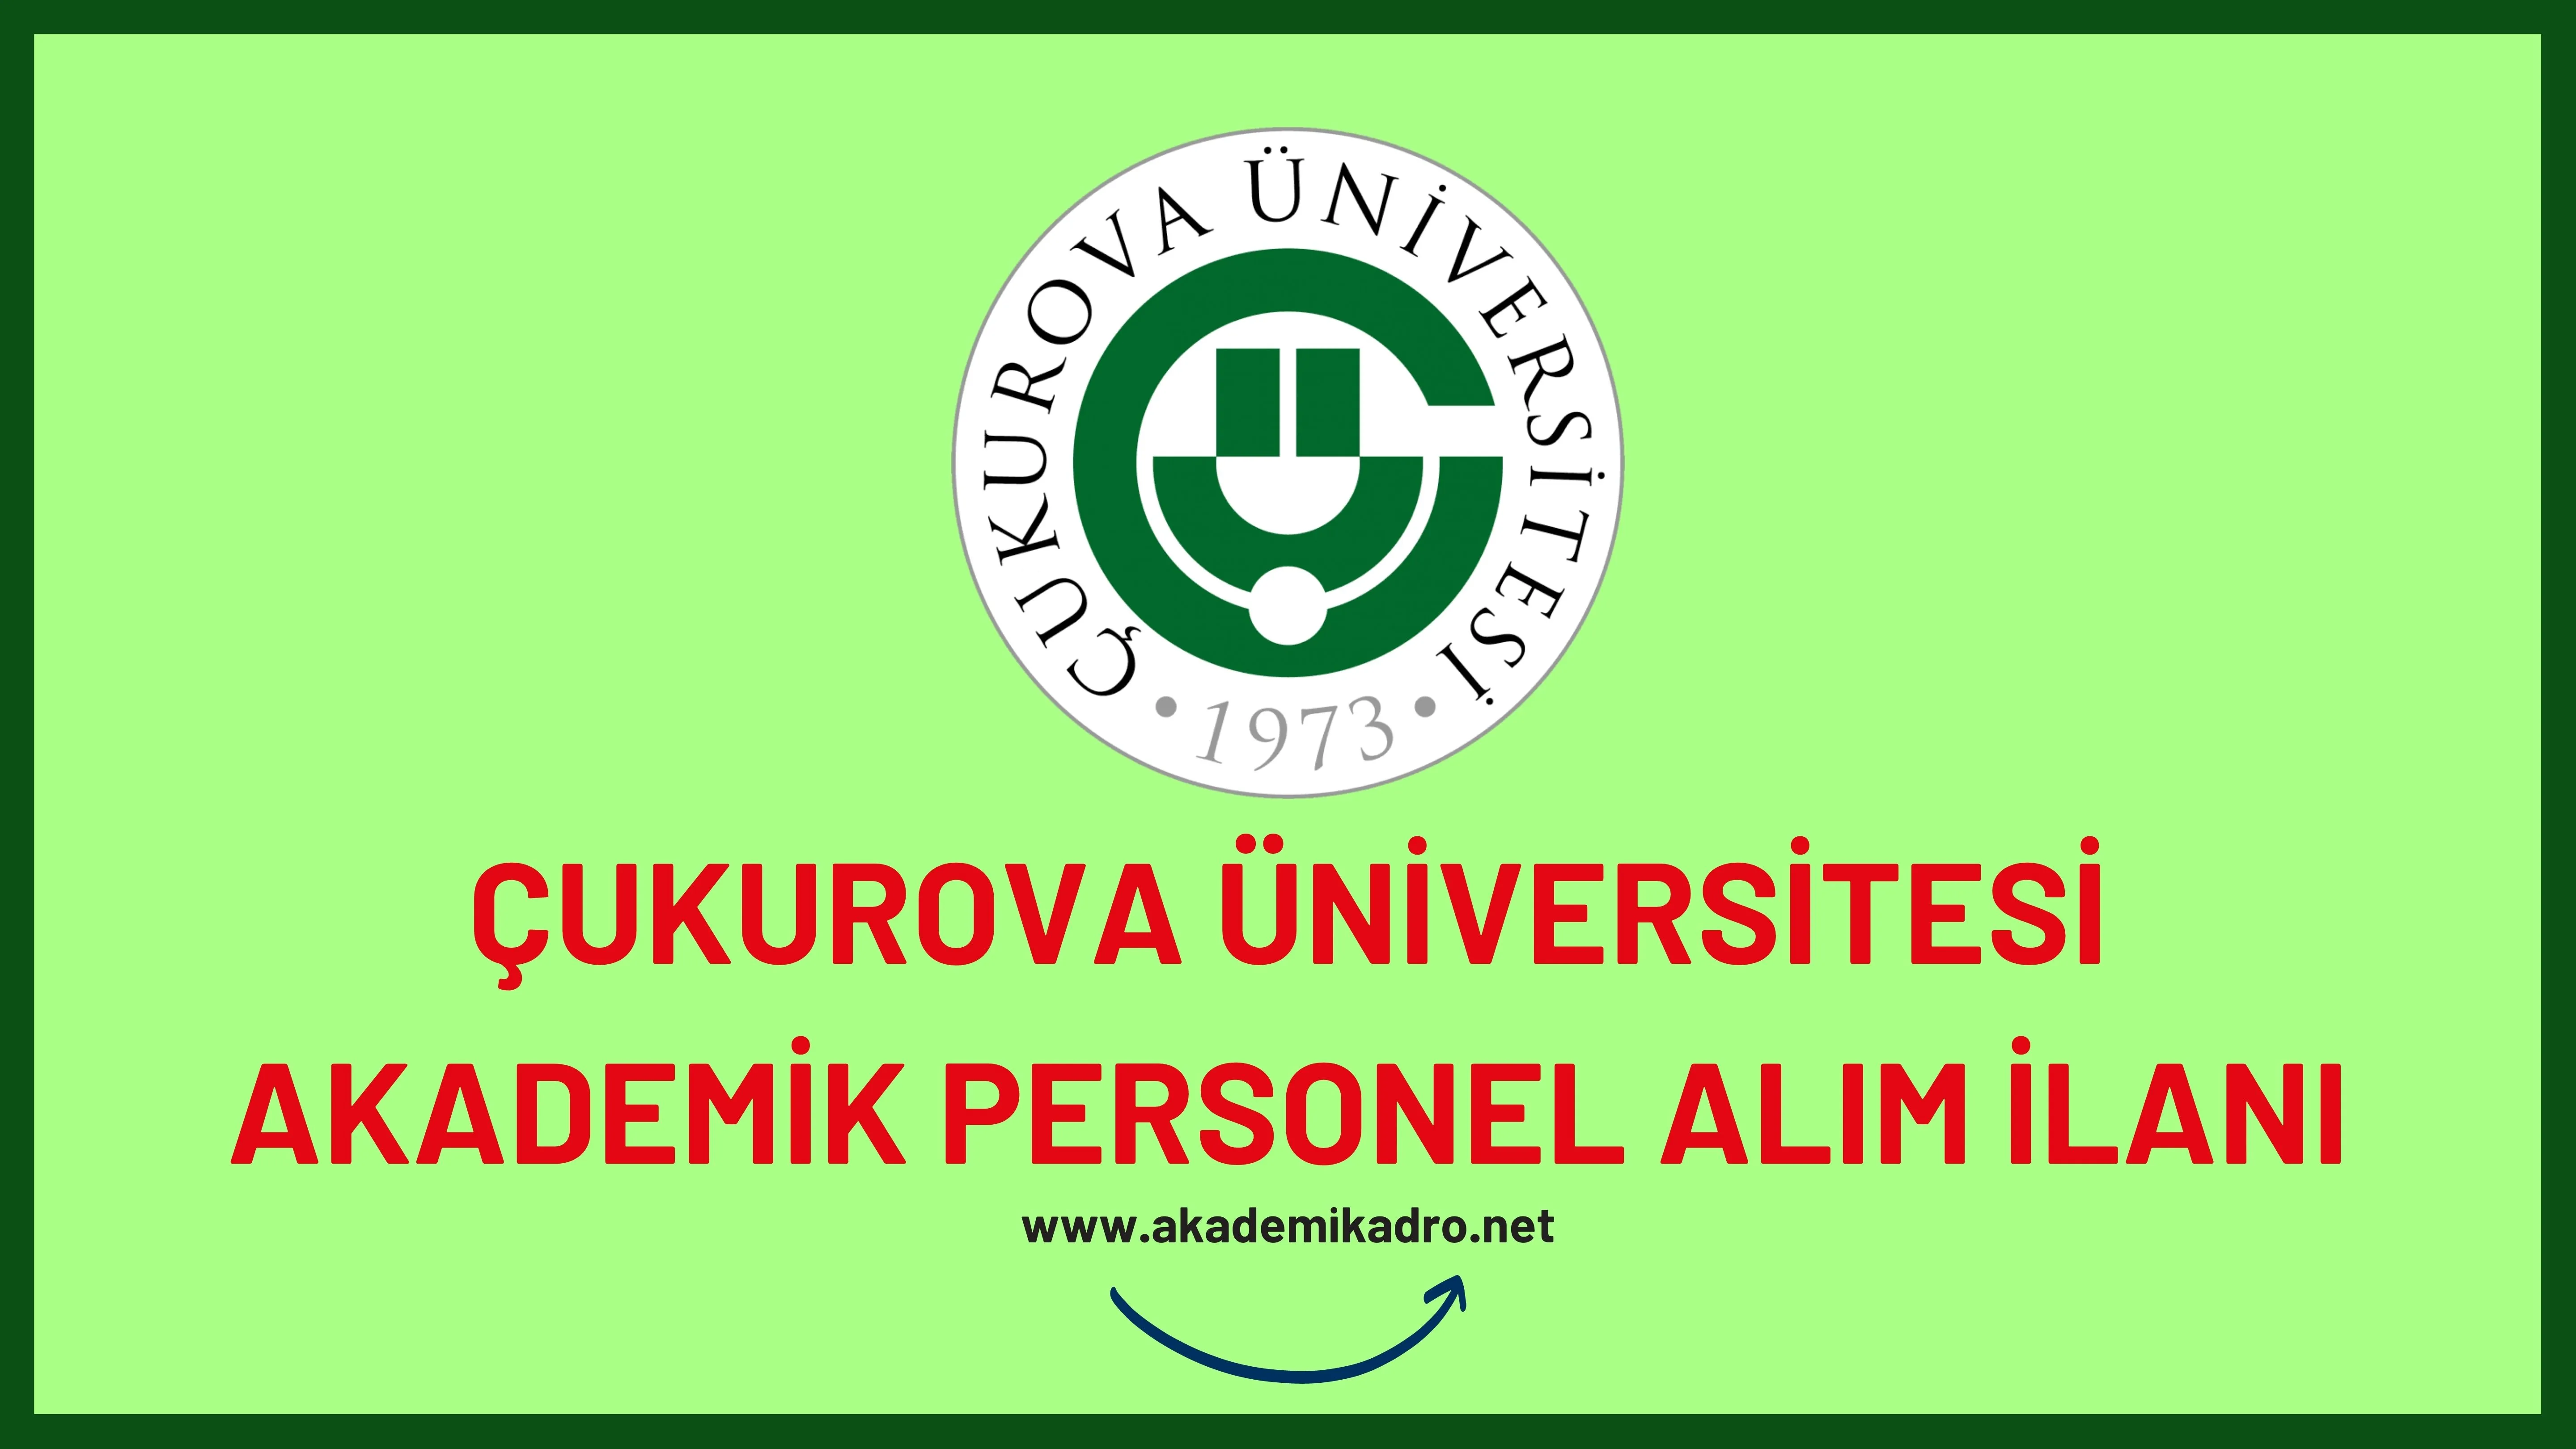 Çukurova Üniversitesi birçok alandan 37 akademik personel alacak.